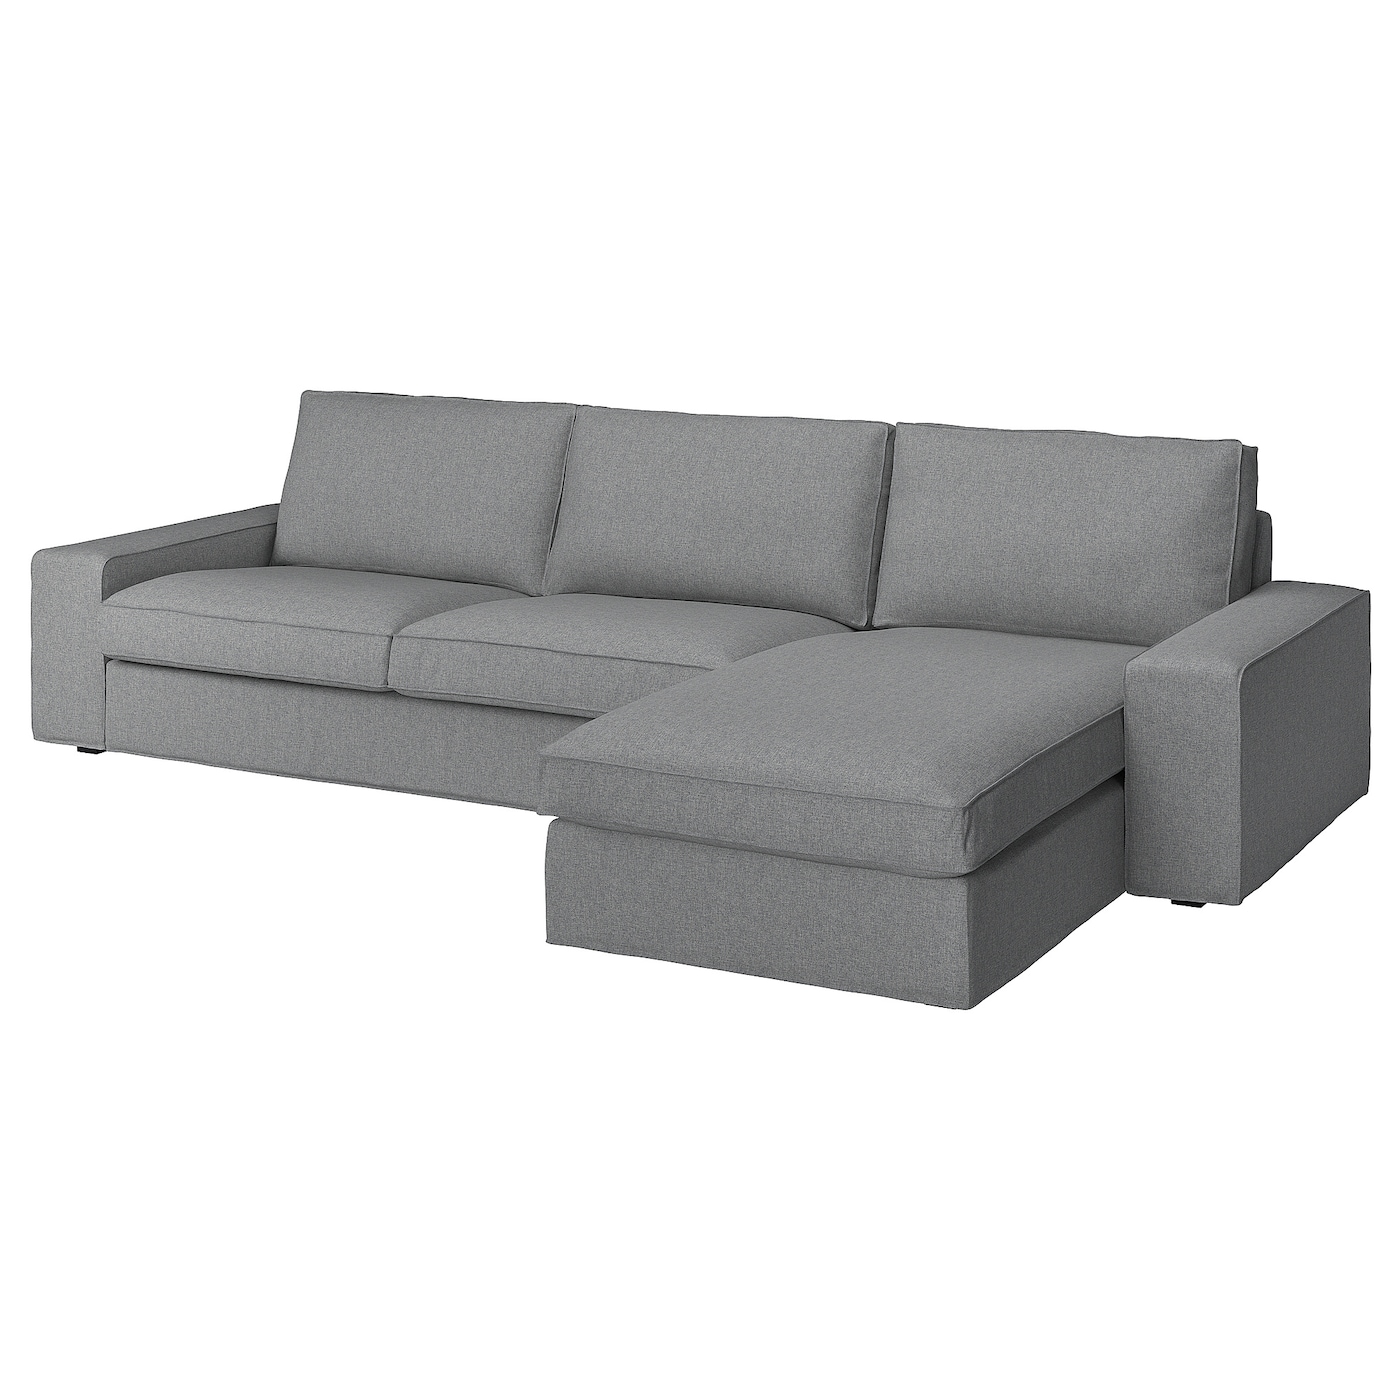 КИВИК 4-местный диван + диван, Тибблби бежевый/серый KIVIK IKEA